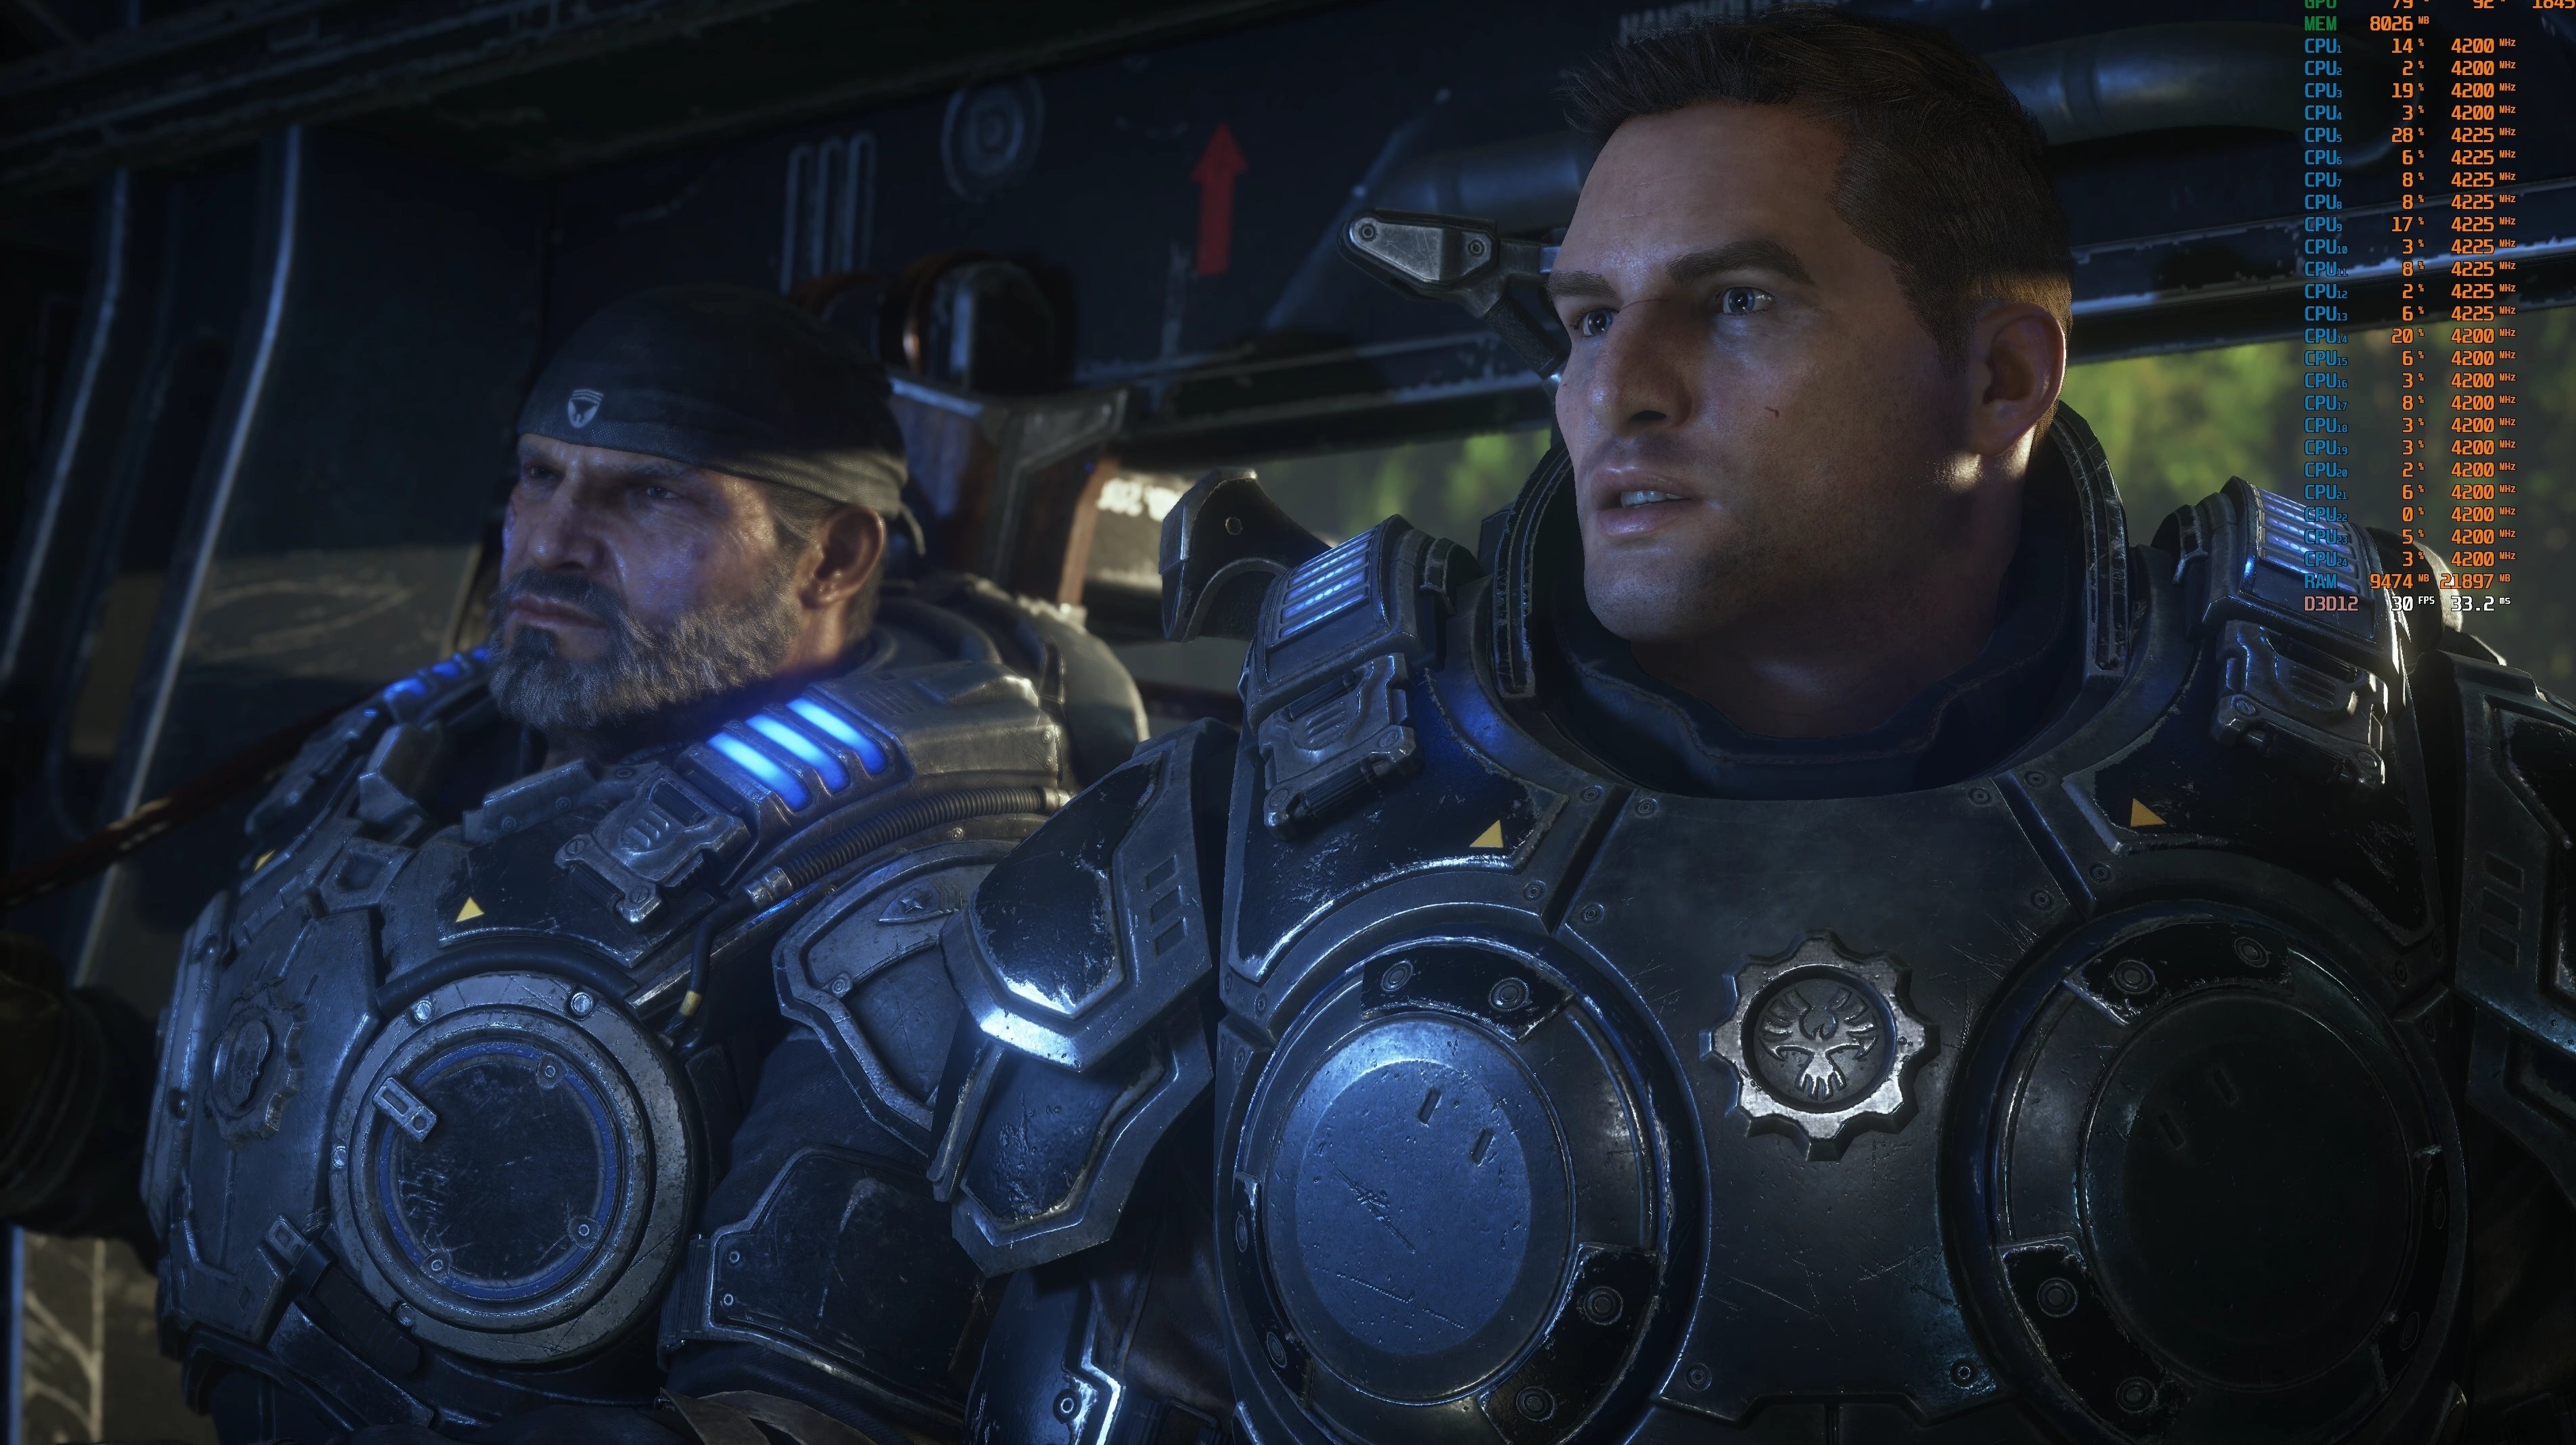 Immagine di Xbox: Gears of War ma non solo con The Coalition che avrebbe in cantiere un altro progetto